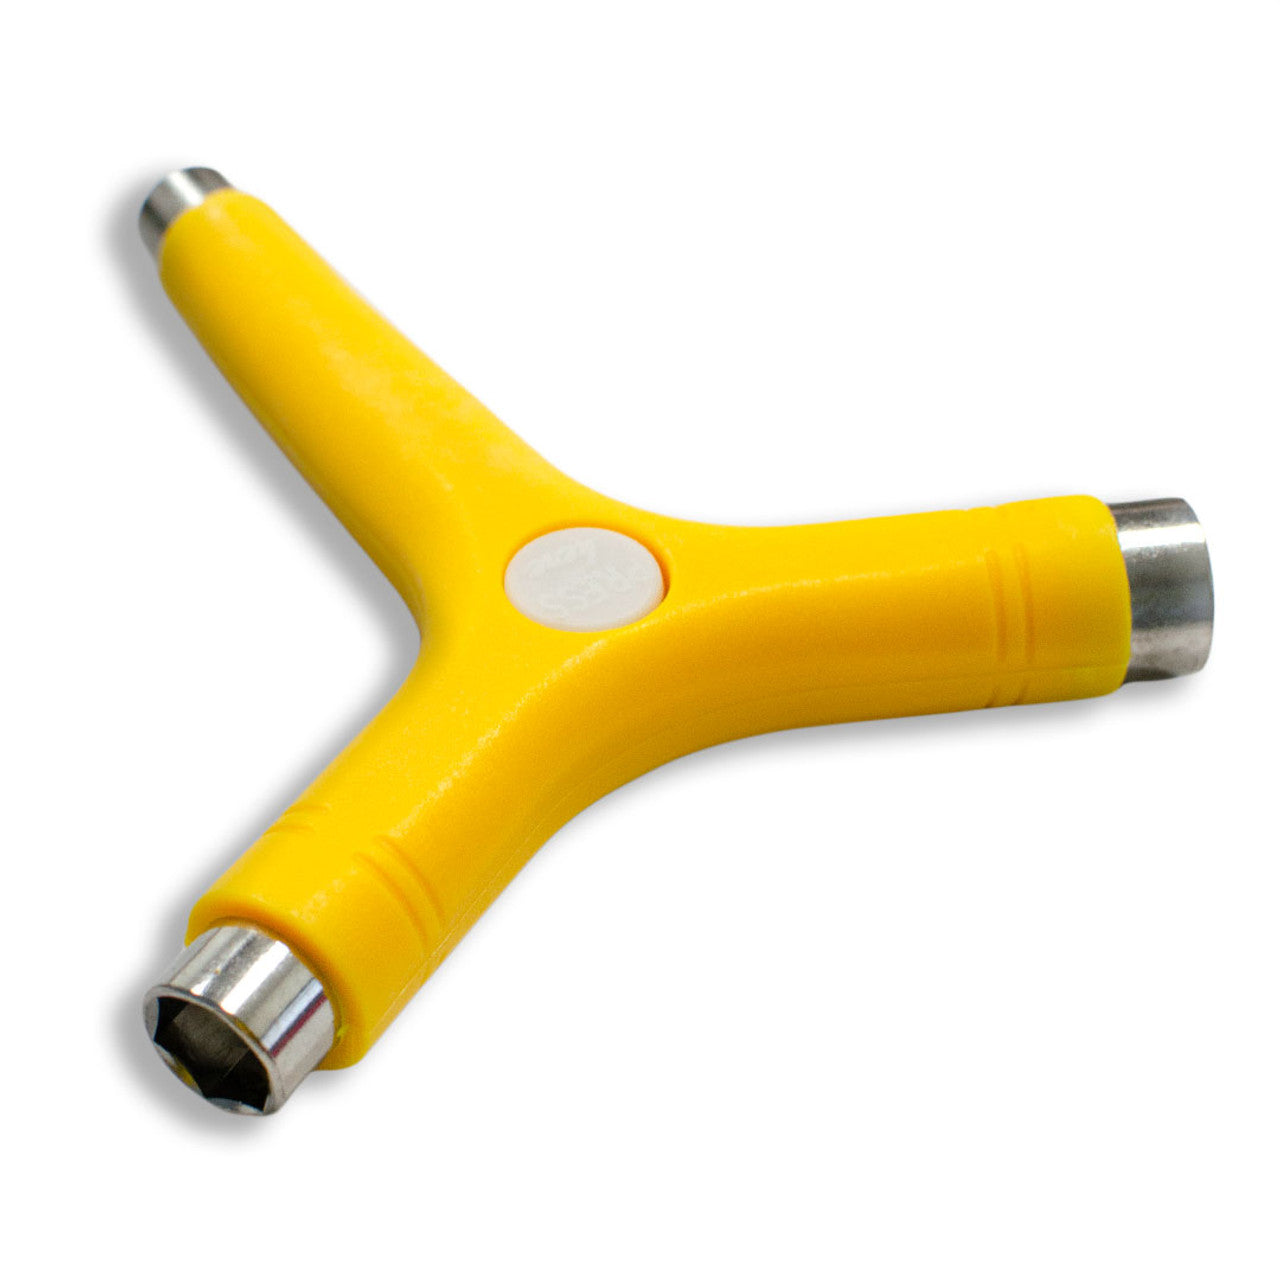 Y-Shaped Skate Tool - Yellow